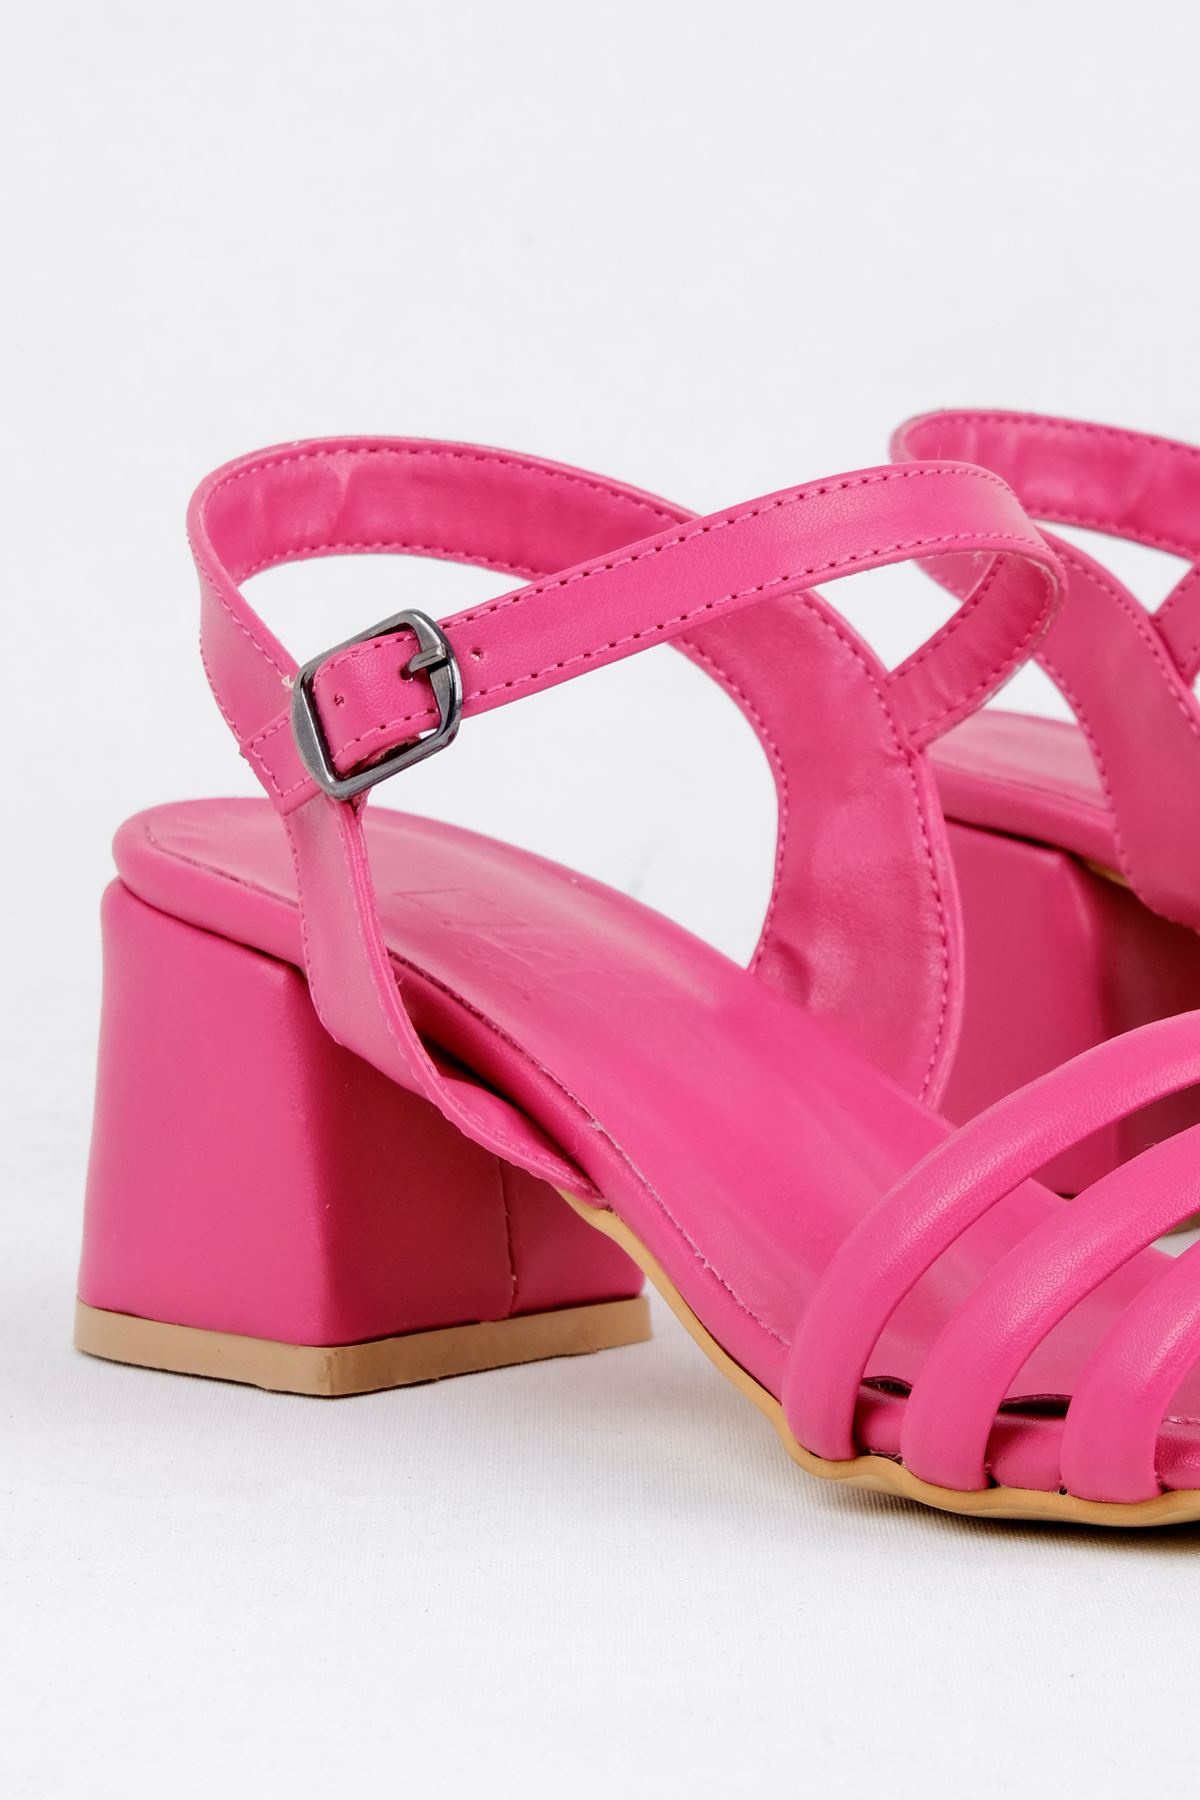 Kadın Biyeli Klasik Topuklu Ayakkabı-Fuşya